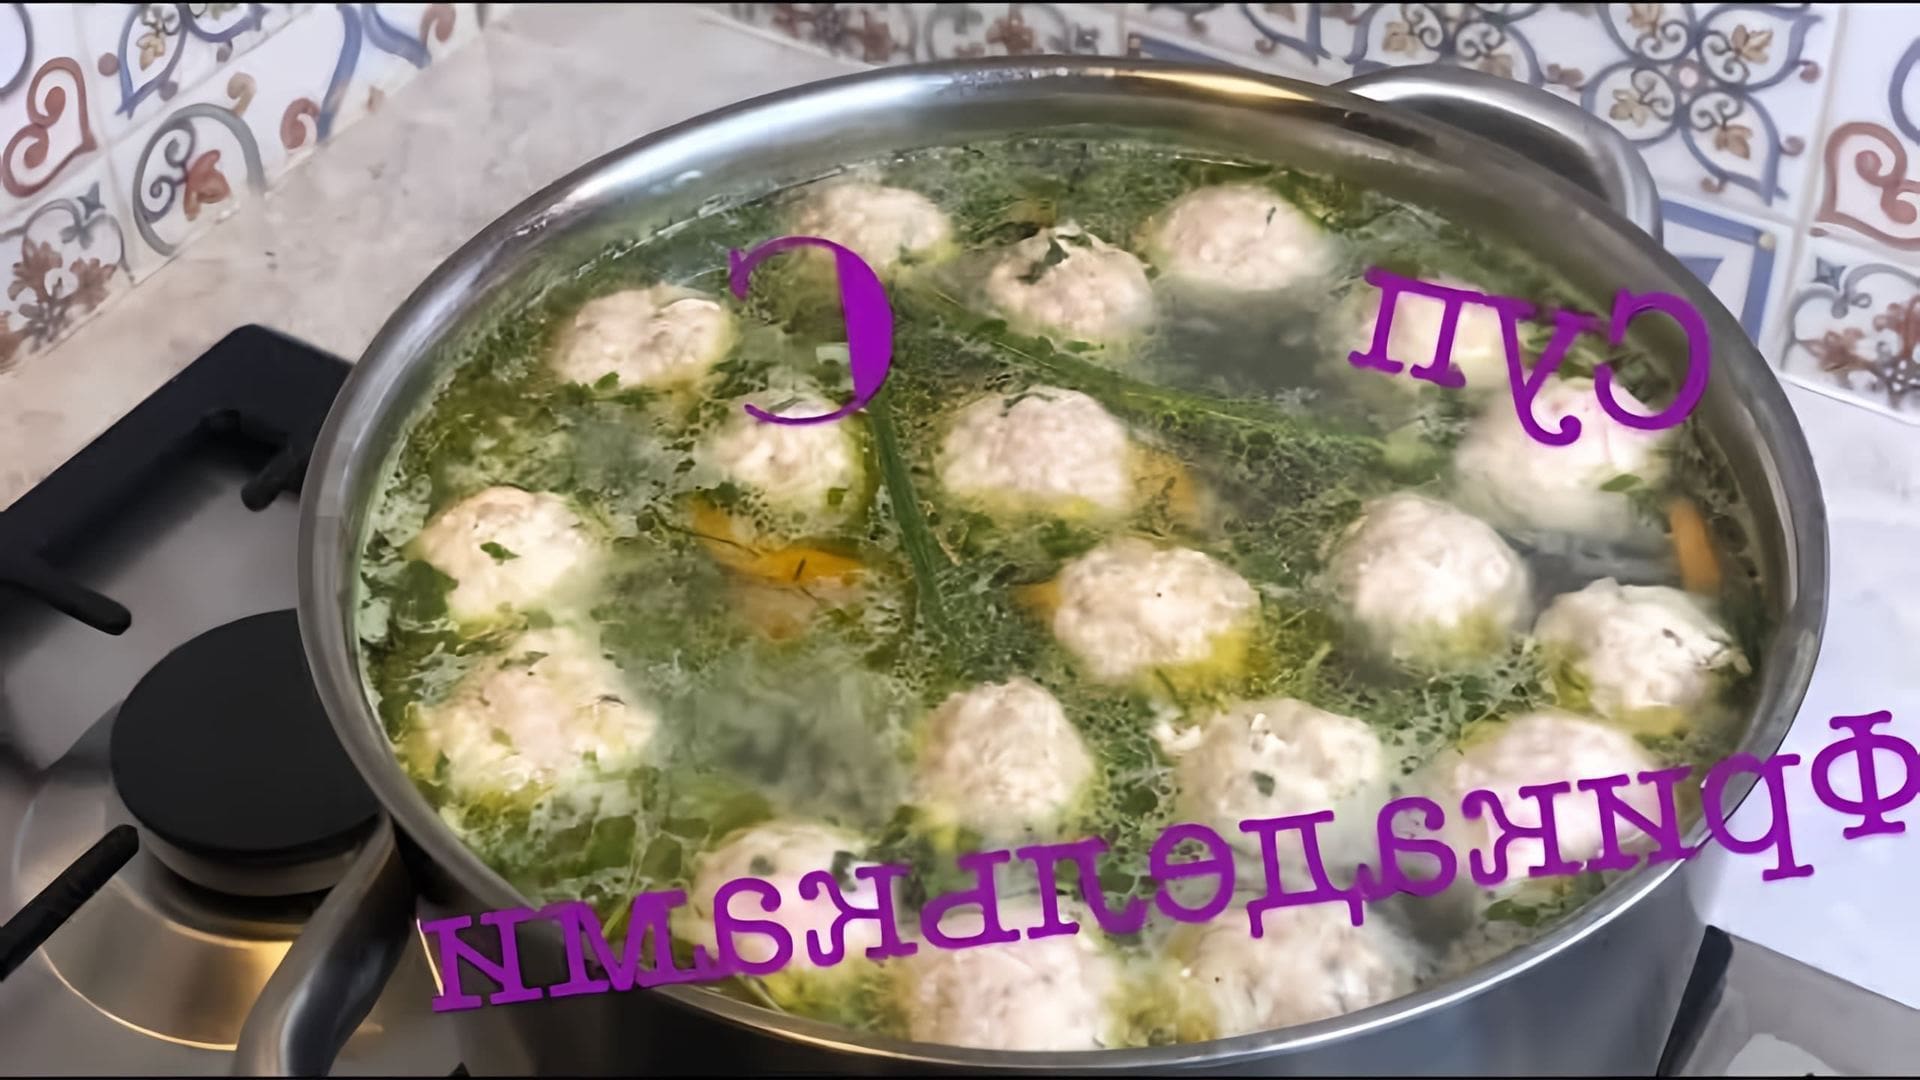 В этом видео демонстрируется процесс приготовления супа с фрикадельками из индейки